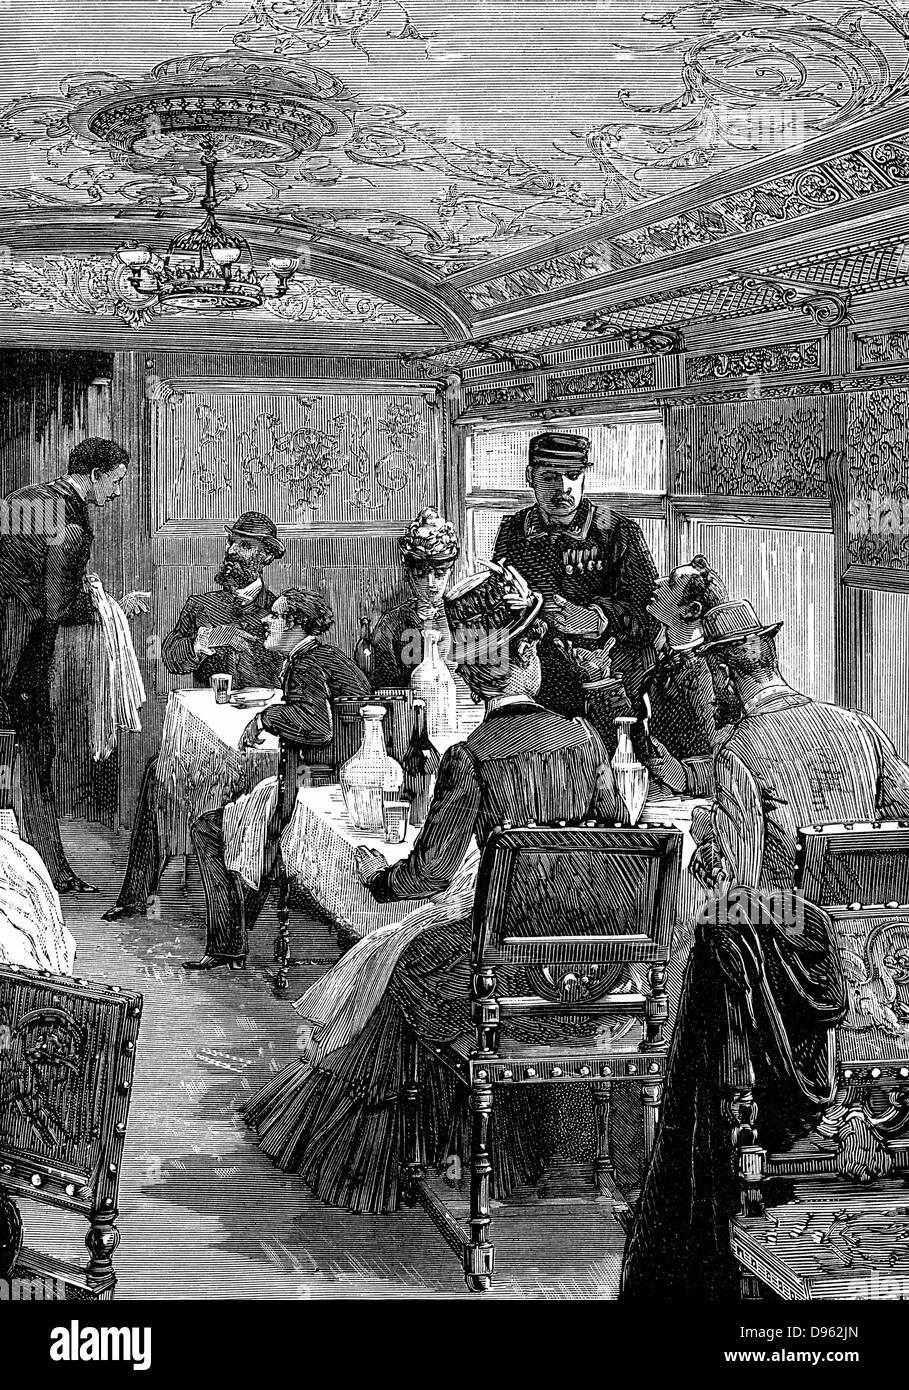 Coche comedor en el Orient Express. Grabado en madera publicado en París, c1885. Foto de stock